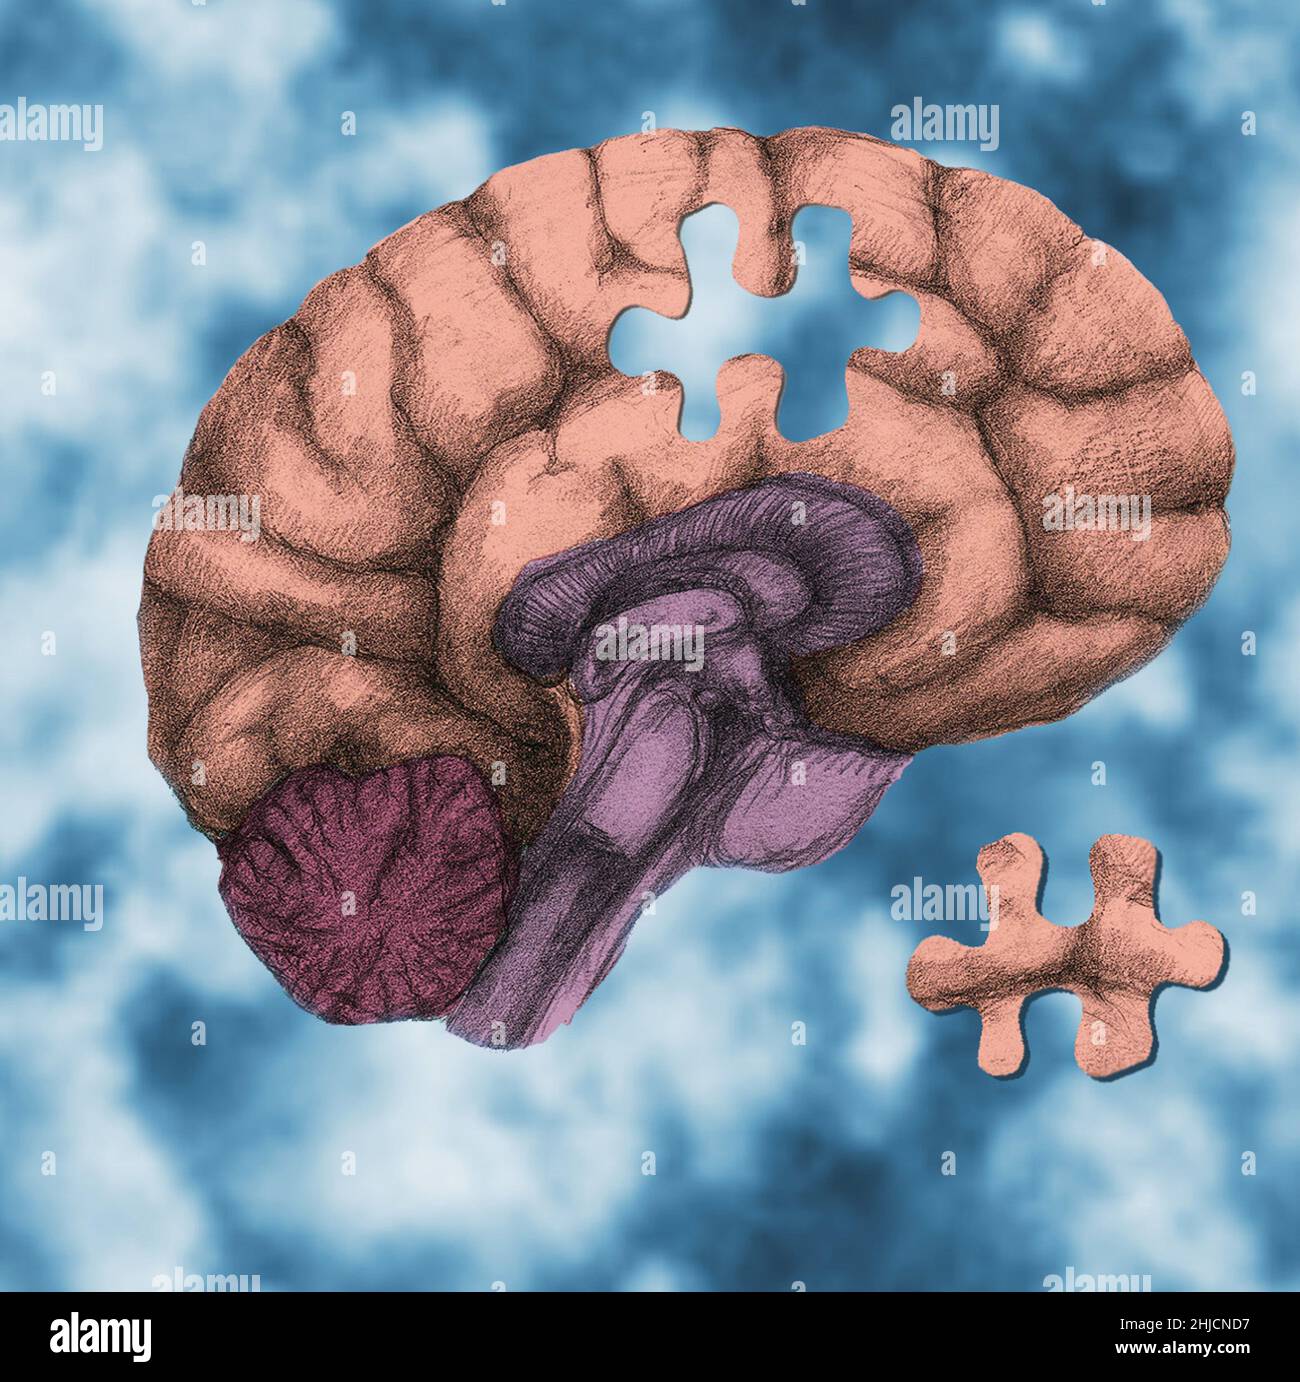 Ein konzeptuelles Bild, das ein in Wolken schwebendes Gehirn zeigt, in dem ein Puzzleteil fehlt, das zur Veranschaulichung der Gehirnfunktion, der Hirnschäden, der Alzheimer-Krankheit, der Komplexität des Gehirns, des Gedächtnisverlustes, Psychische Gesundheit, Vergesslichkeit, Demenz oder die Rätsel der Neurowissenschaften. Stockfoto